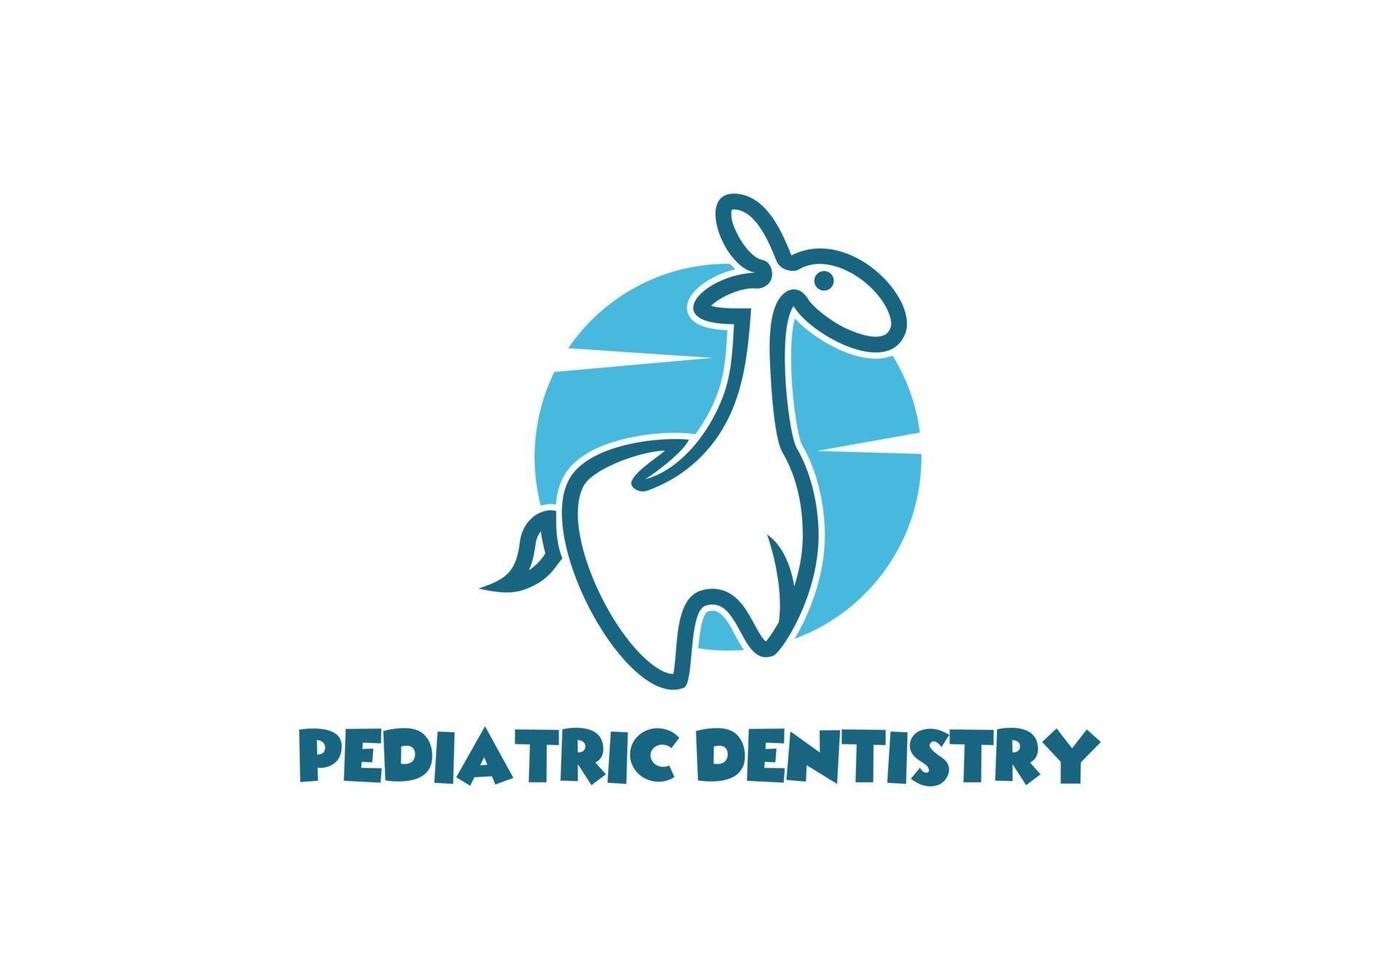 lustige pädiatrische Zahnheilkunde mit Giraffen- und Zahnlogodesign vektor